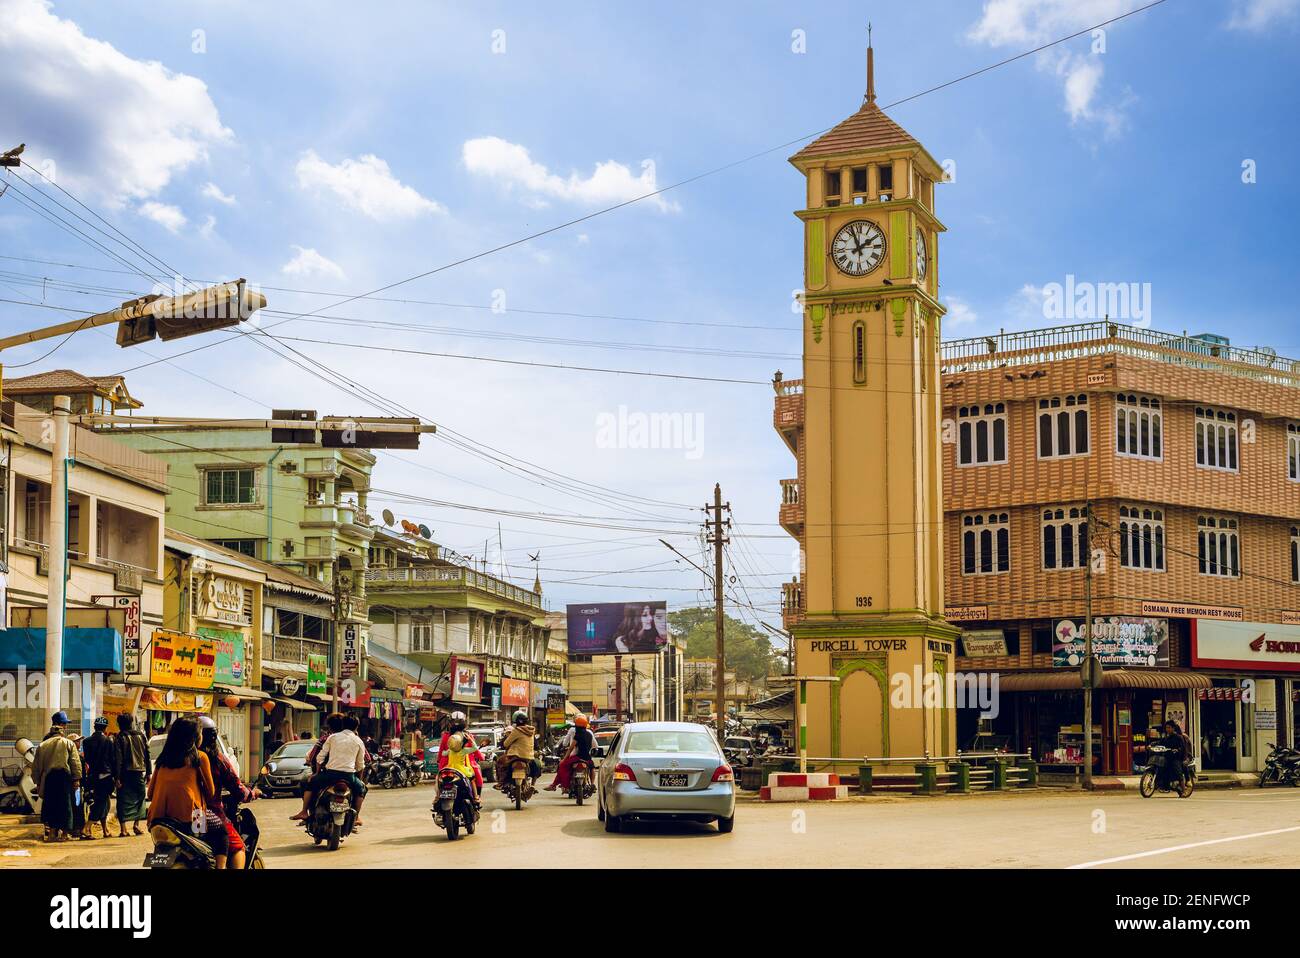 12 febbraio 2016: Purcell Tower situato nel centro di Pyin Oo Lwin, Myanmar Birmania. La torre costruita nel 1936 era un presente della regina Victoria, An Foto Stock